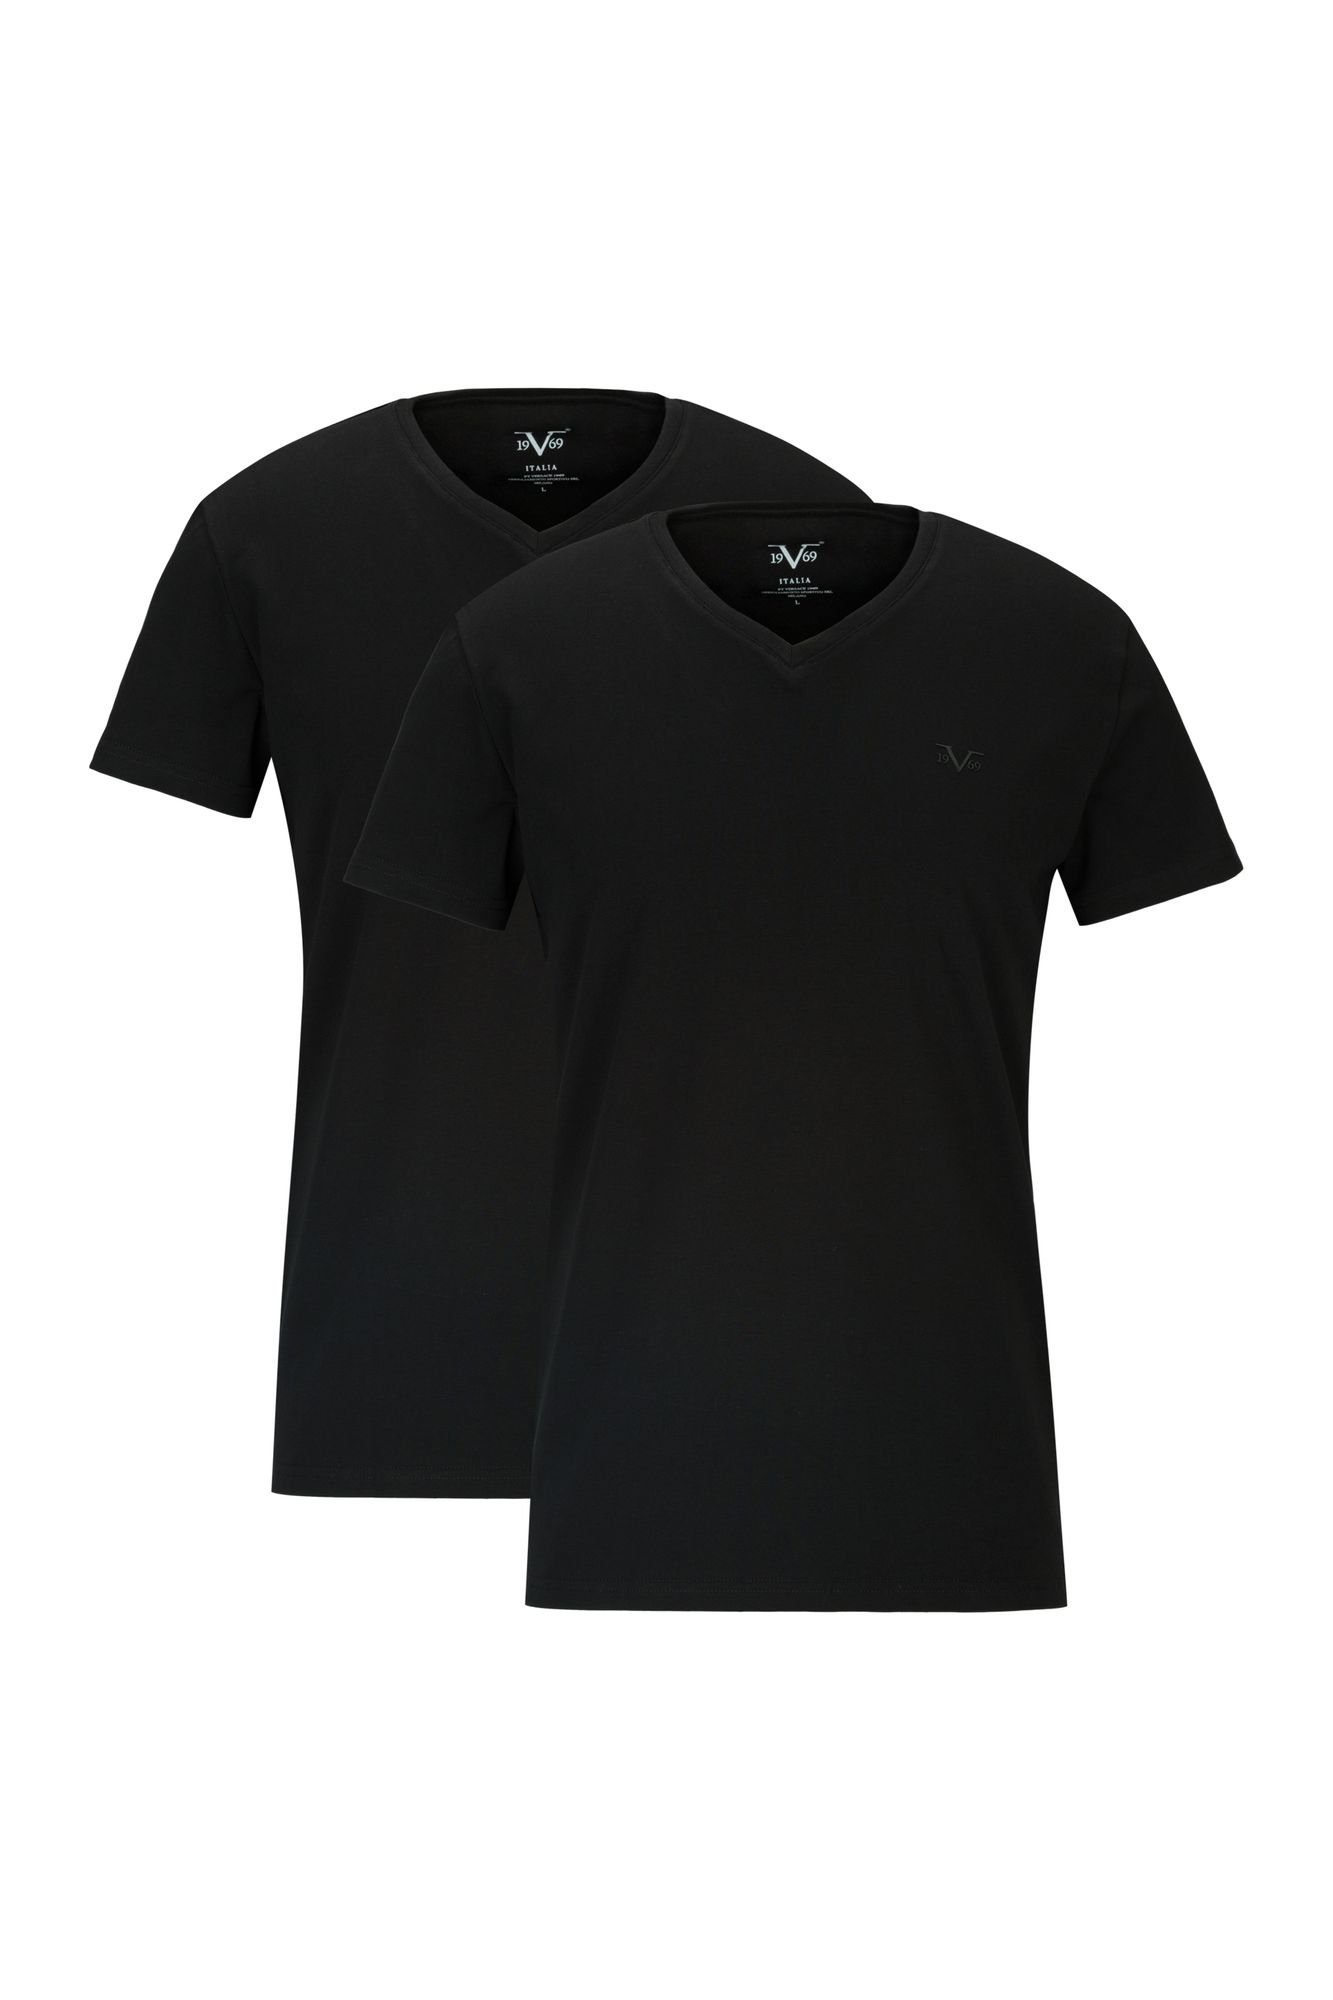 19V69 Italia by Versace T-Shirt Unterziehshirt Unterhemd mit Kurzarm V-Ausschnitt für Herren mit einem kleinem Ton-in-Ton Logo auf der Brust schwarz